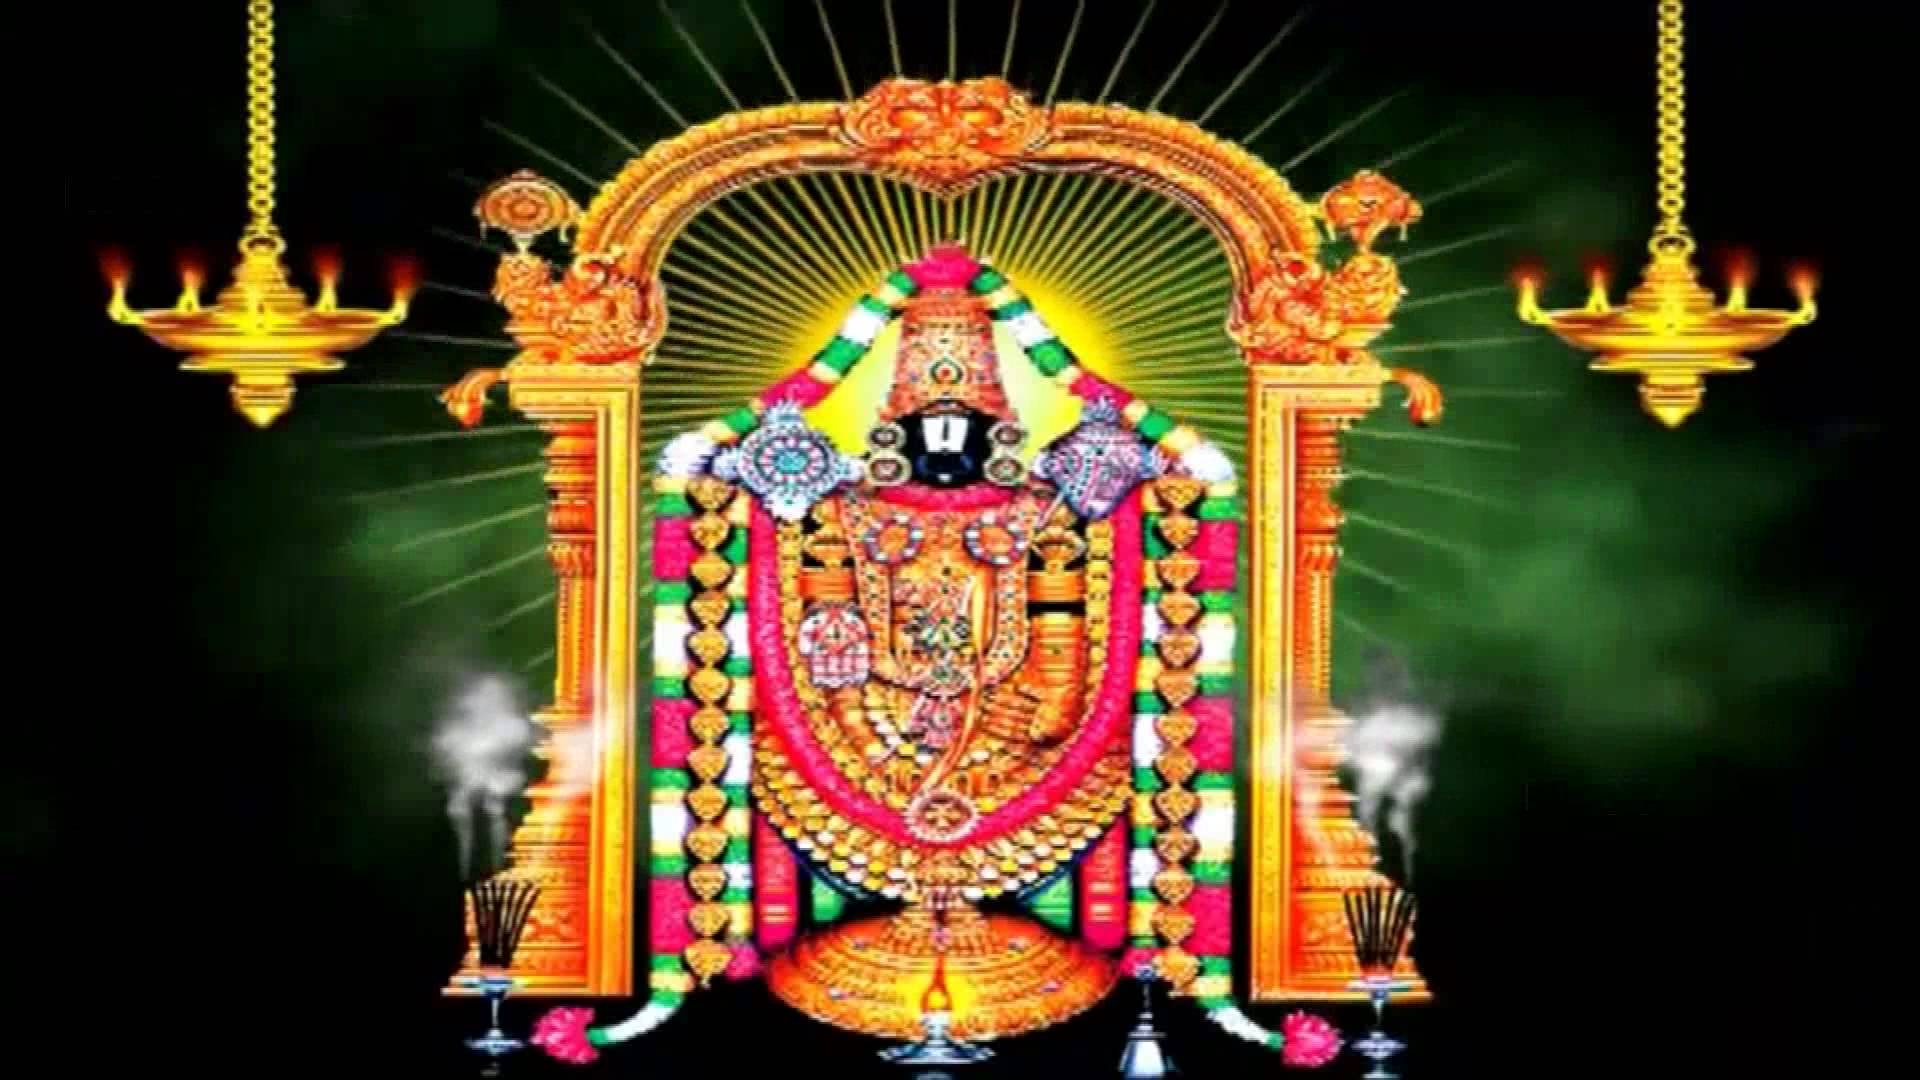 Lord Venkateswara Hd Wallpapers For Desktop 1080p Tirupati Balaji Original Photo 2015 274527 Hd Wallpaper Backgrounds Download